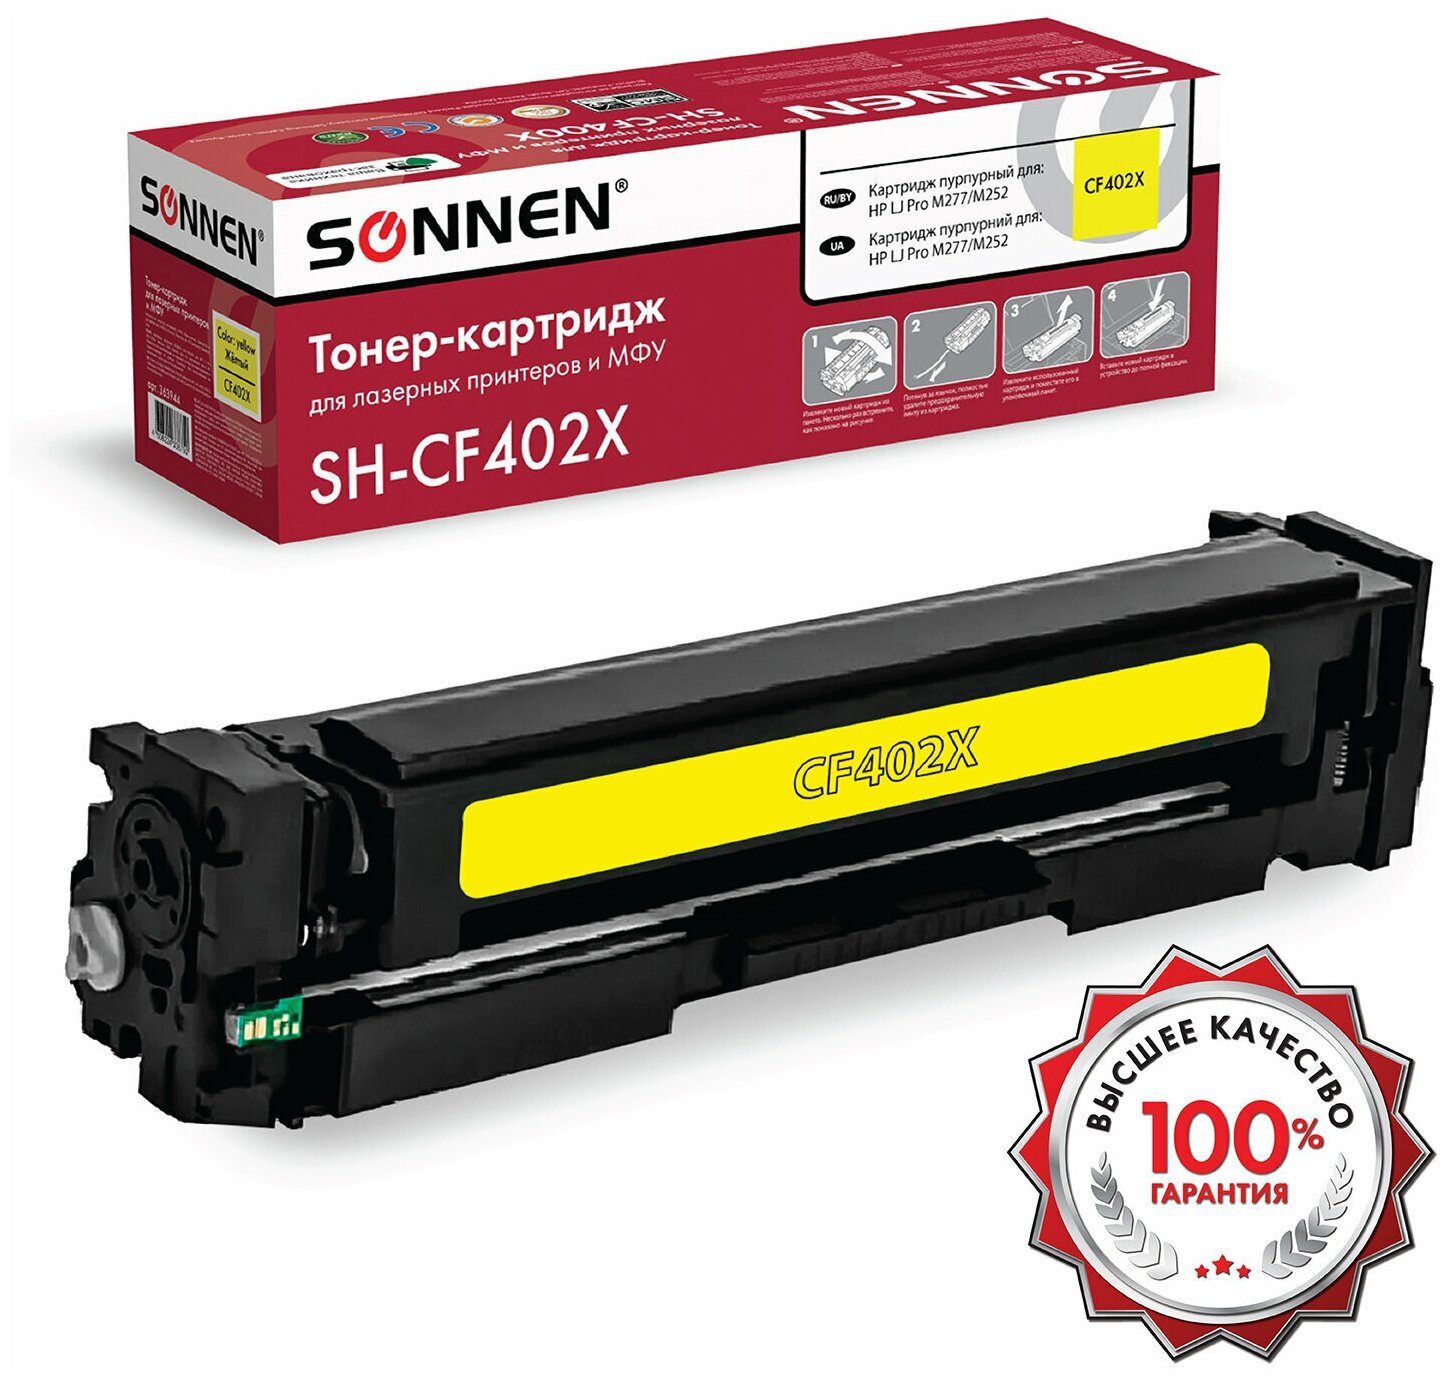 Картридж лазерный SONNEN (SH-CF402X) для HP LJ Pro M277/M252 высшее качество желтый, 2300 страниц, 363944 (арт. 363944)